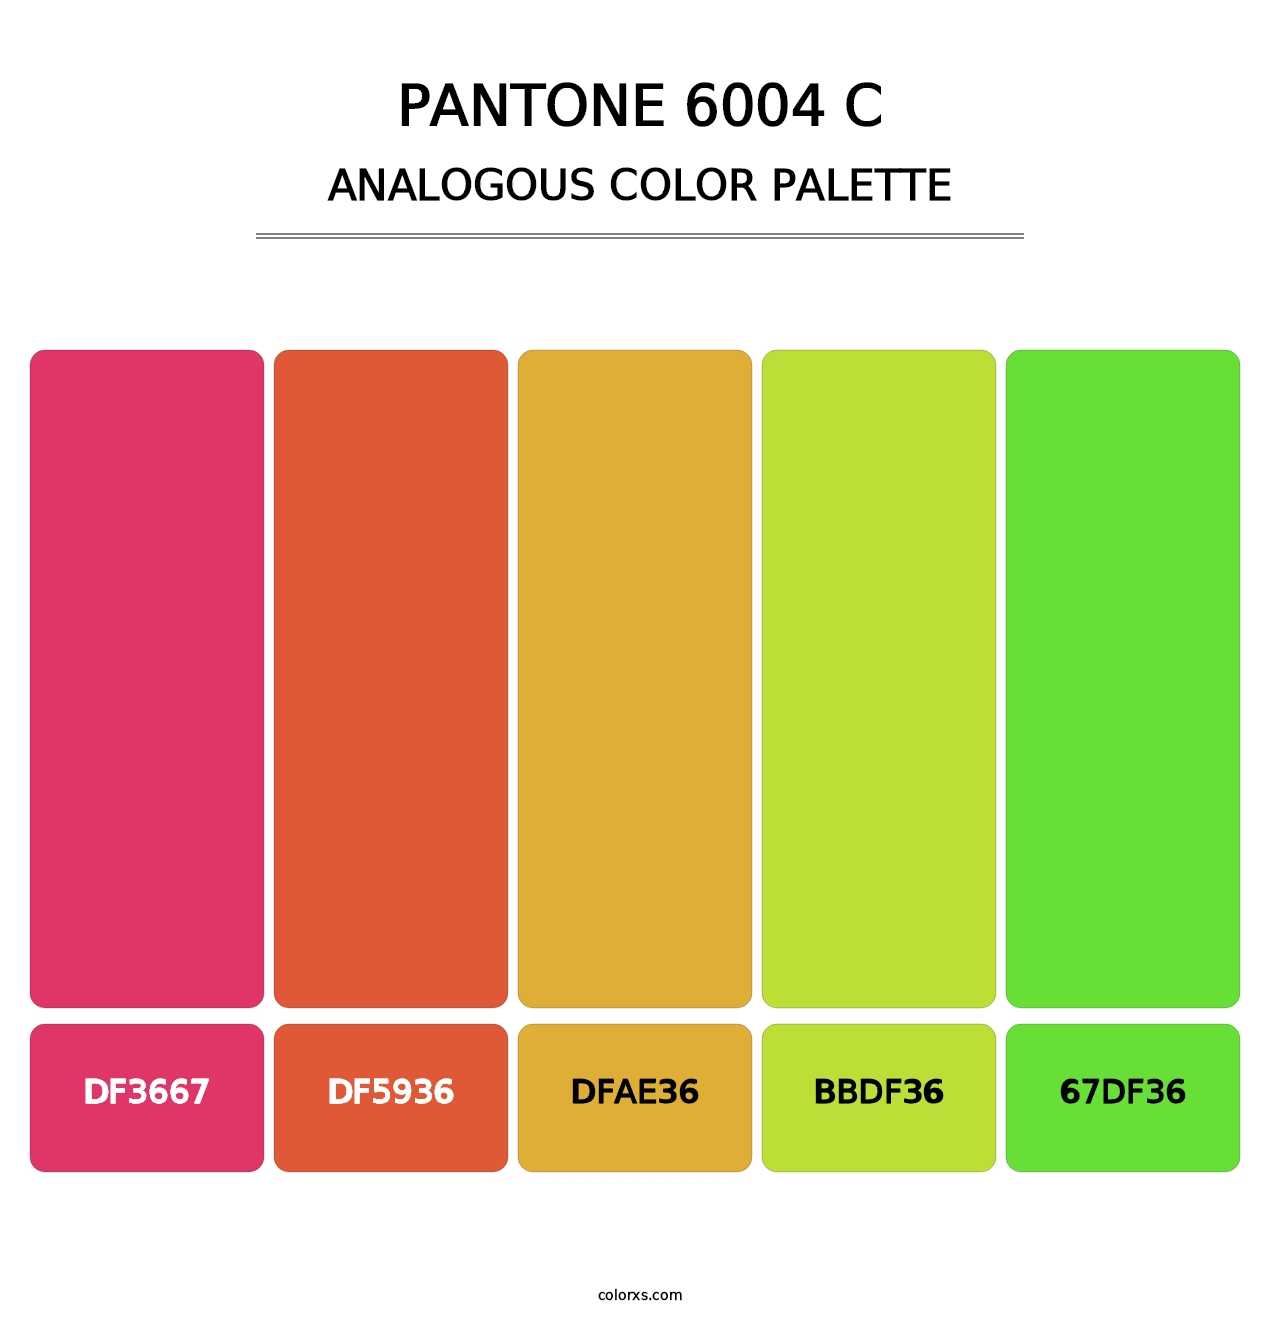 PANTONE 6004 C - Analogous Color Palette